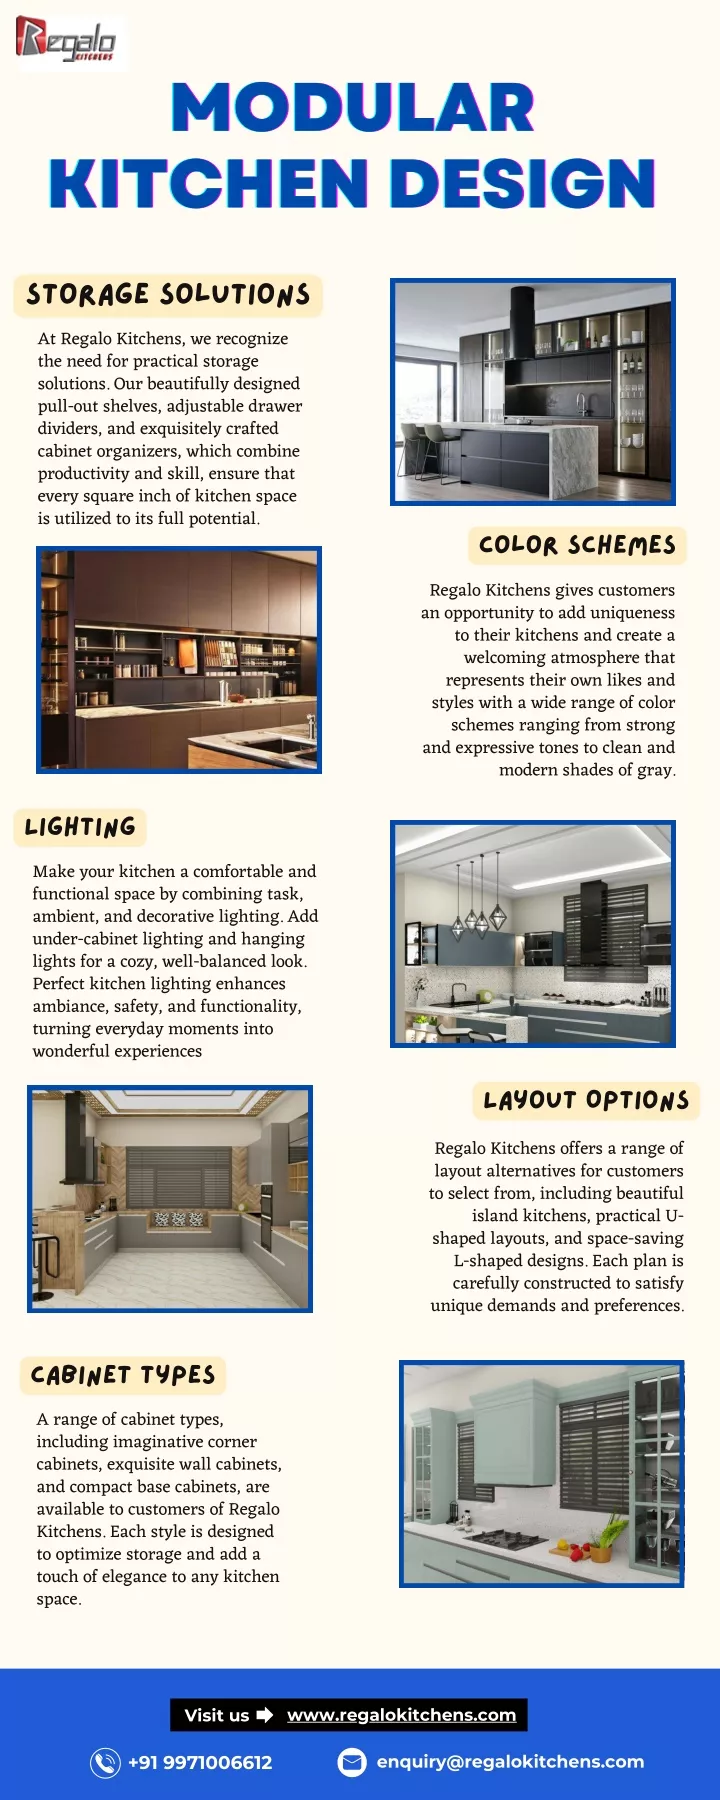 modular modular modular kitchen design kitchen